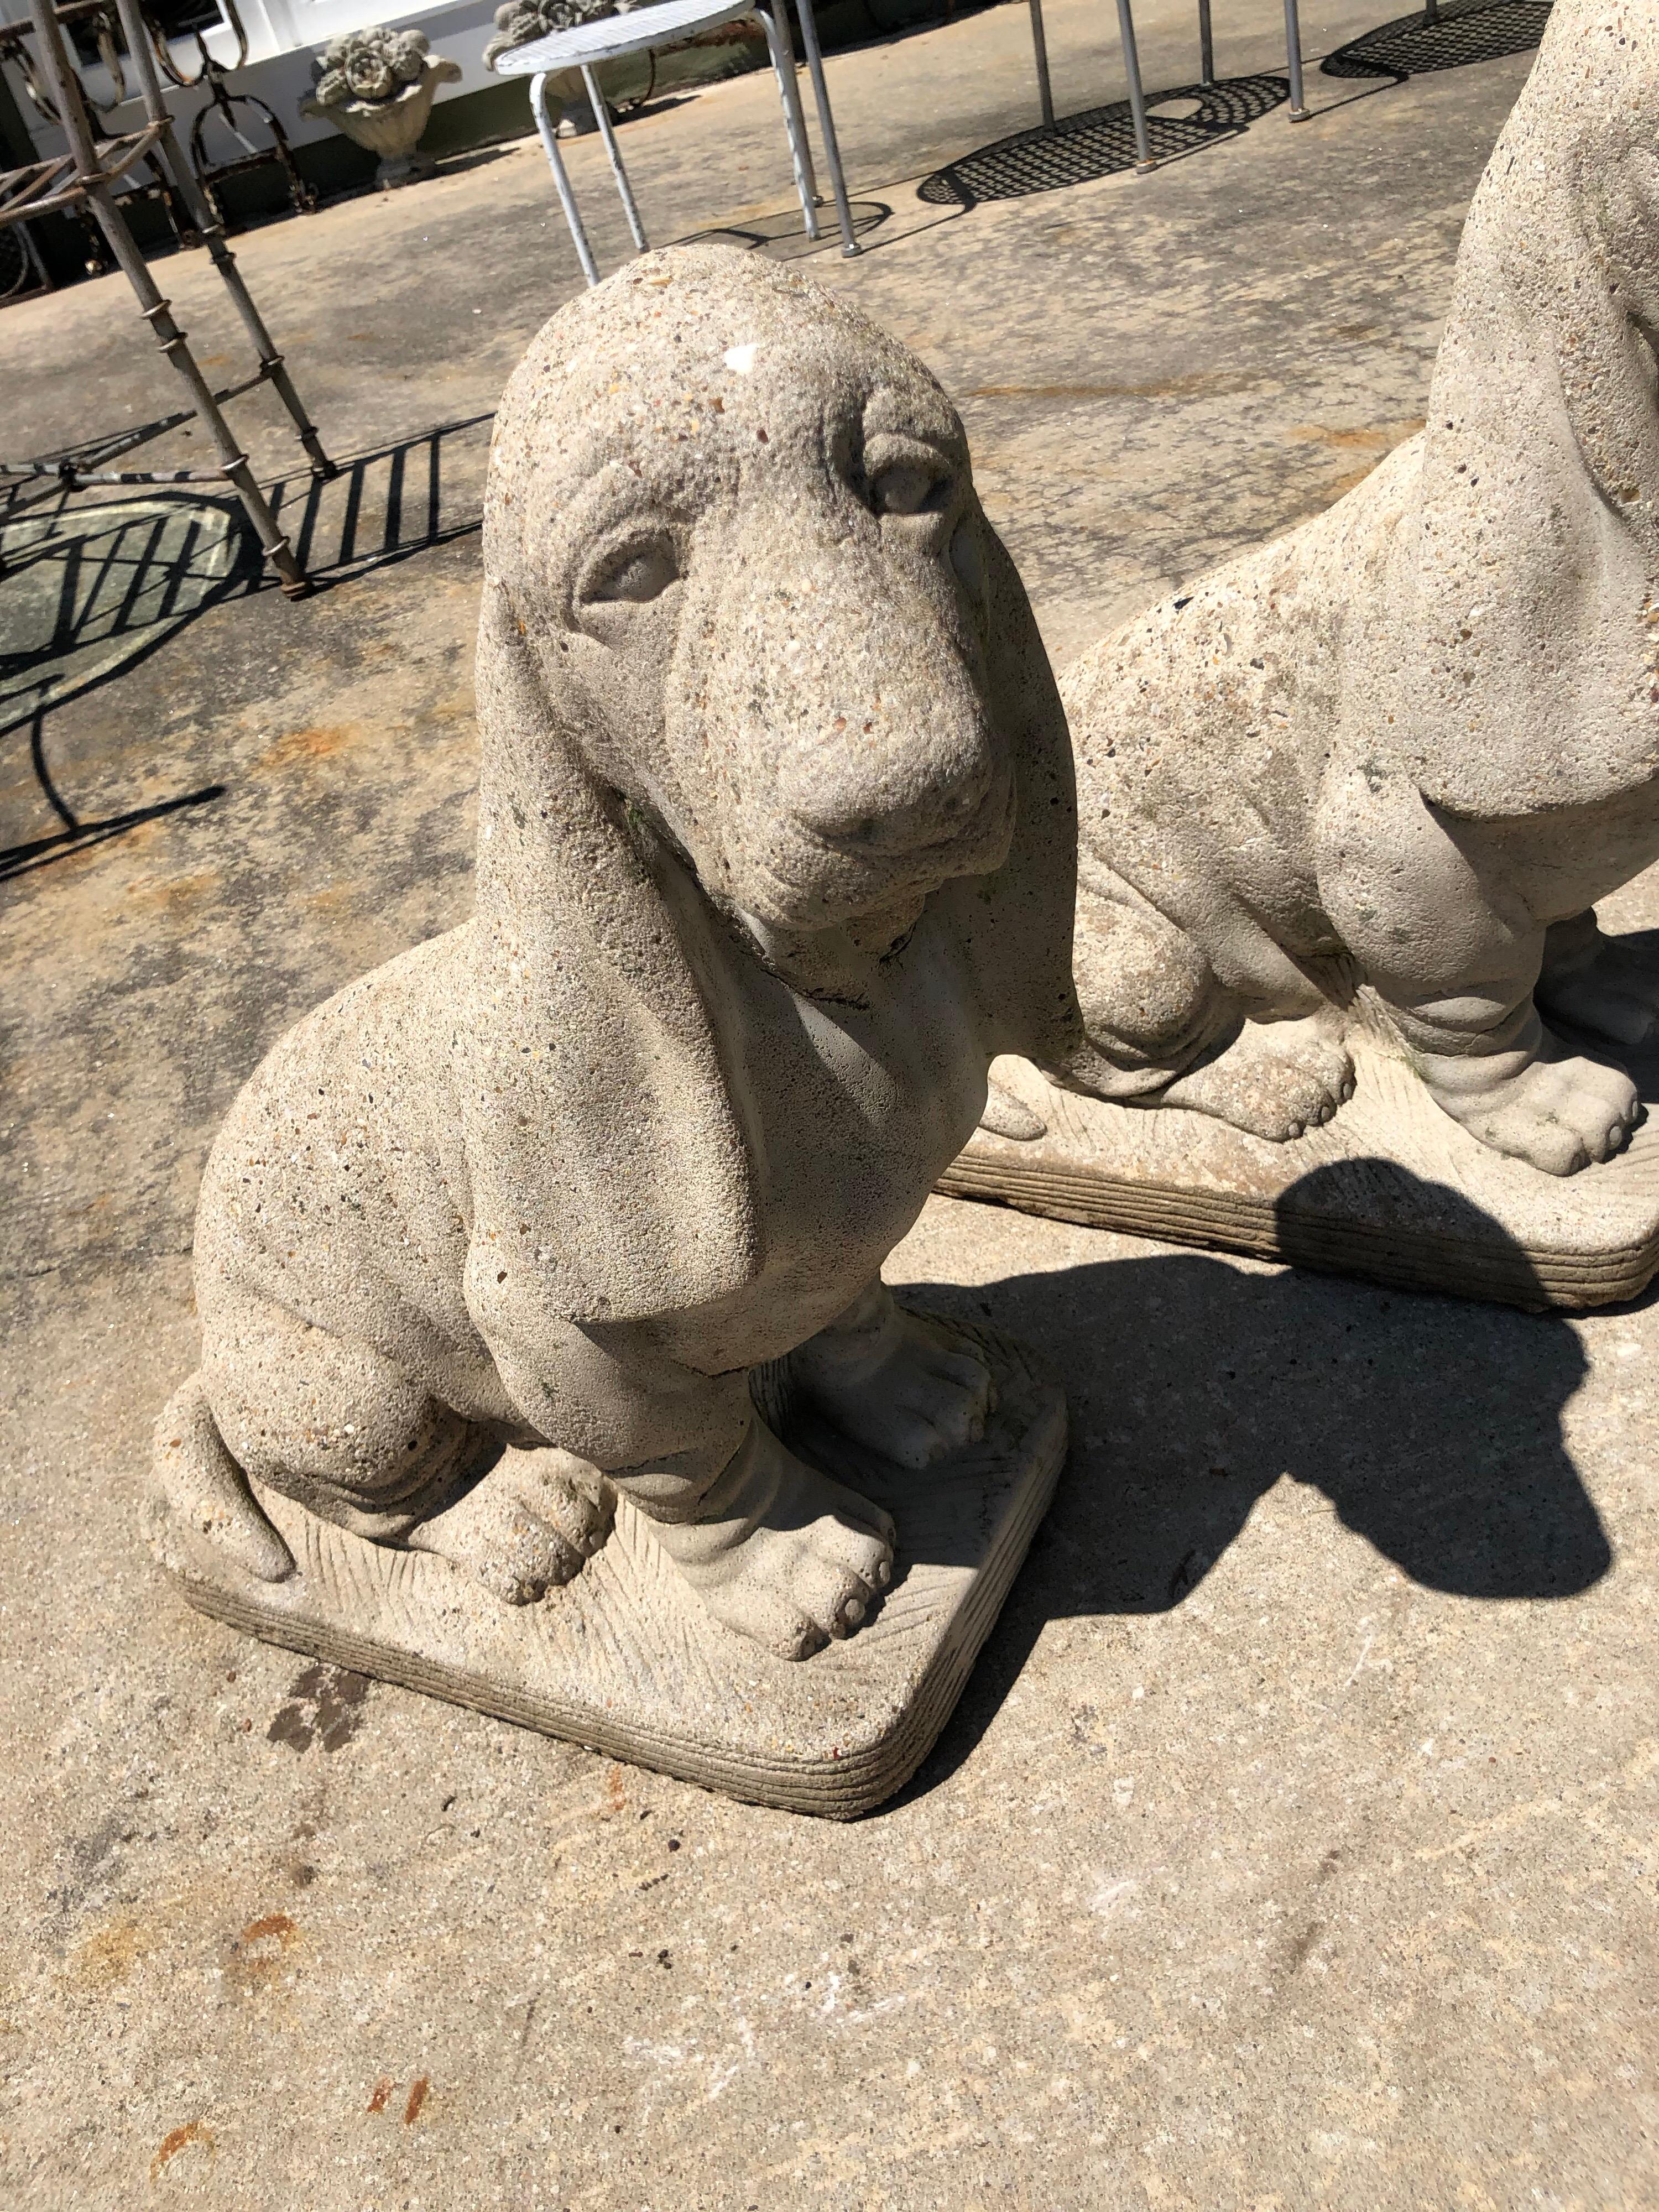 American Pair of Vintage Cement Bassett Hound Garden Sculptures